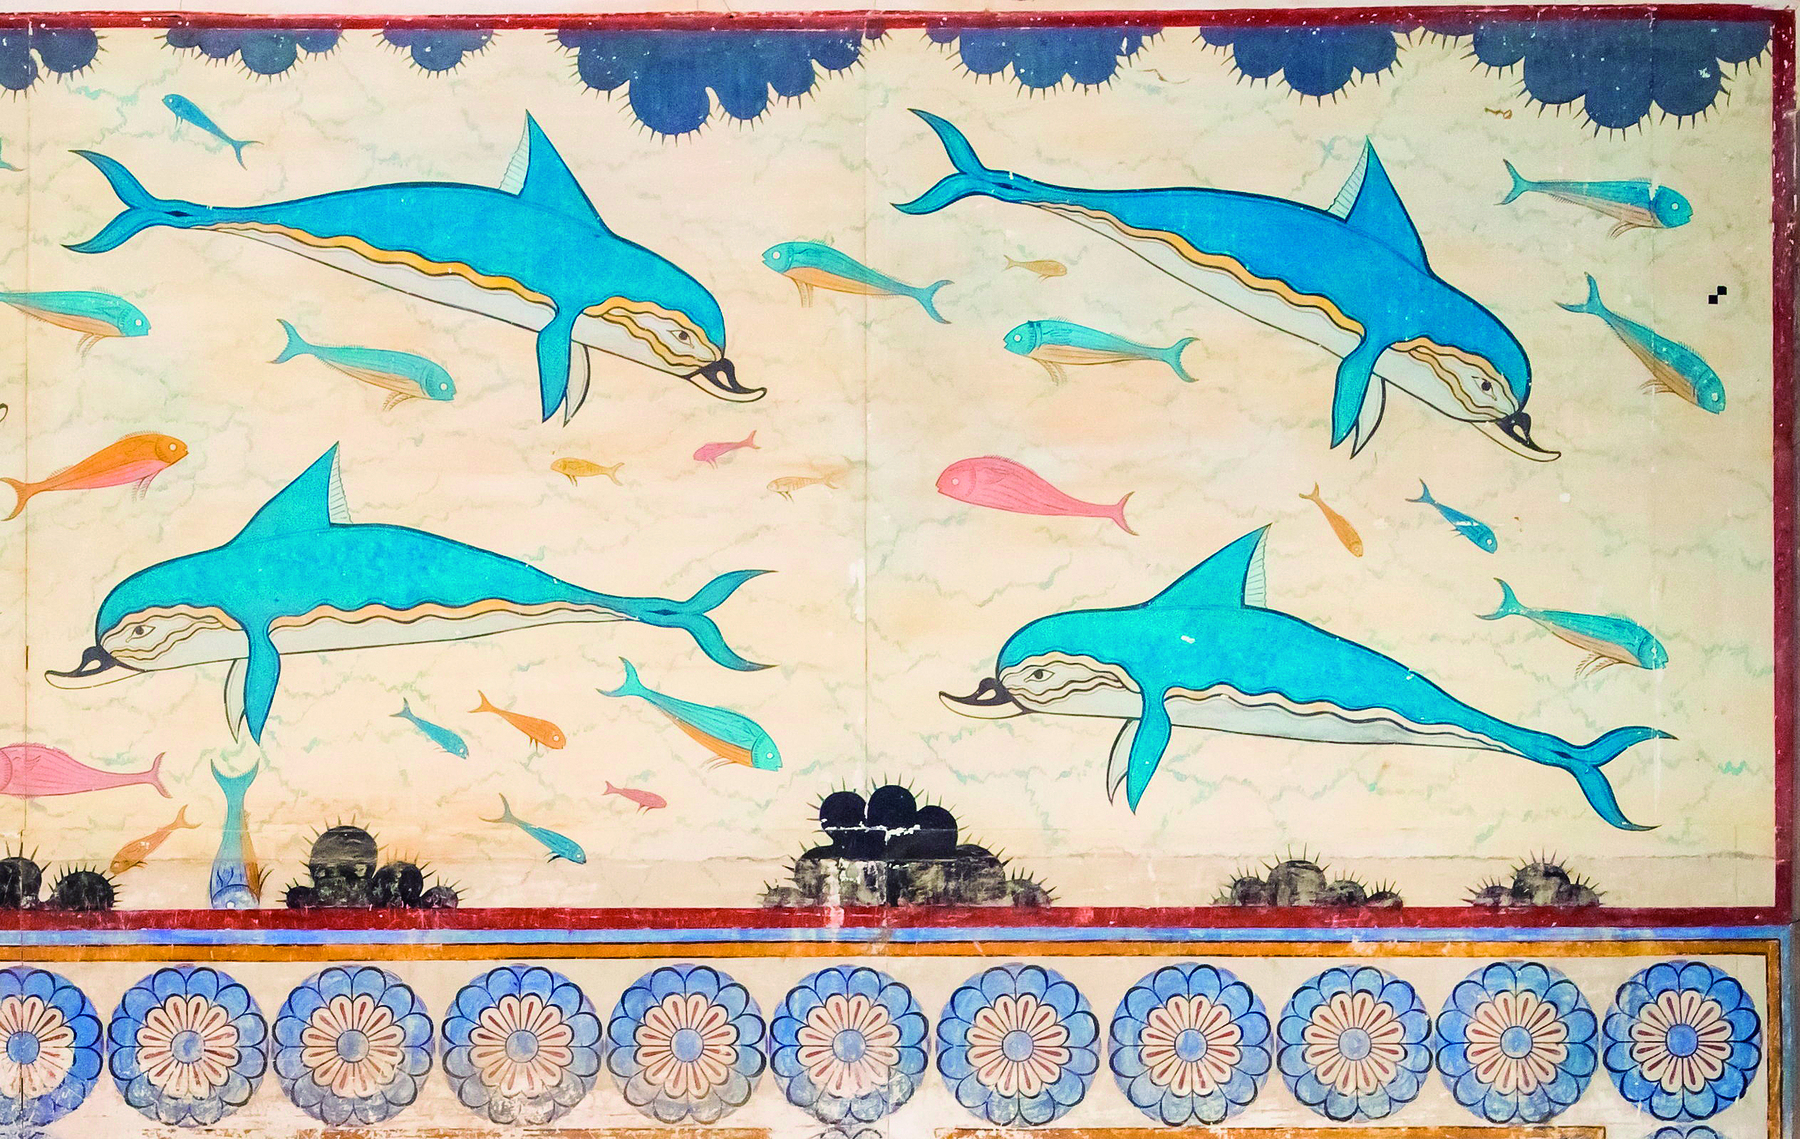 Afresco. Representação de golfinhos com nadadeiras laterais, cauda e uma nadadeira no dorso. São de coloração azul. Ao redor, peixes coloridos. Na base inferior, uma faixa horizontal com flores de pétalas azuis e miolo branco.